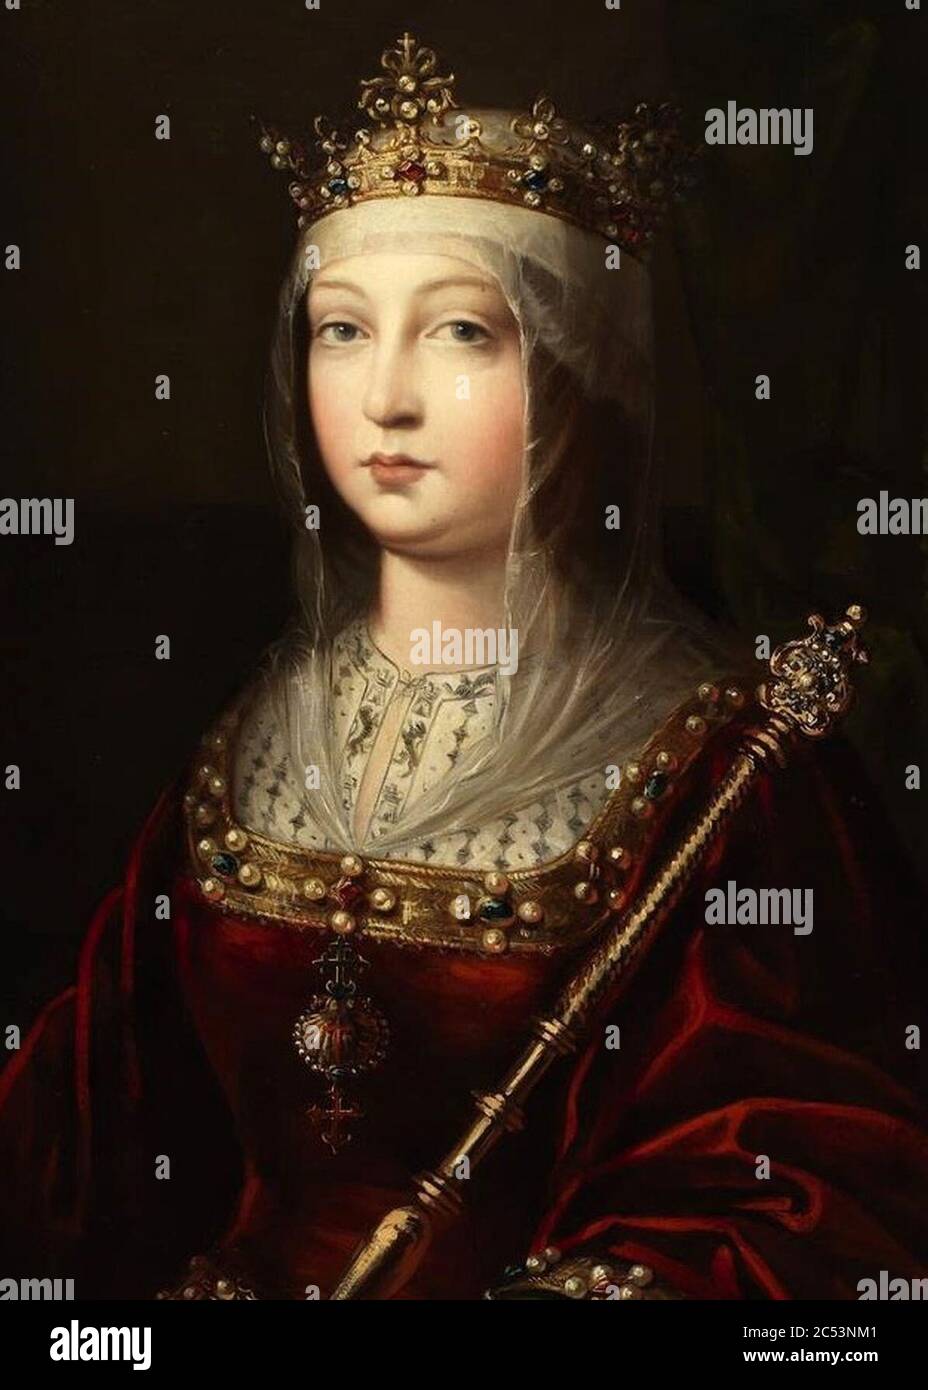 Isabel I of Castile. Stock Photo